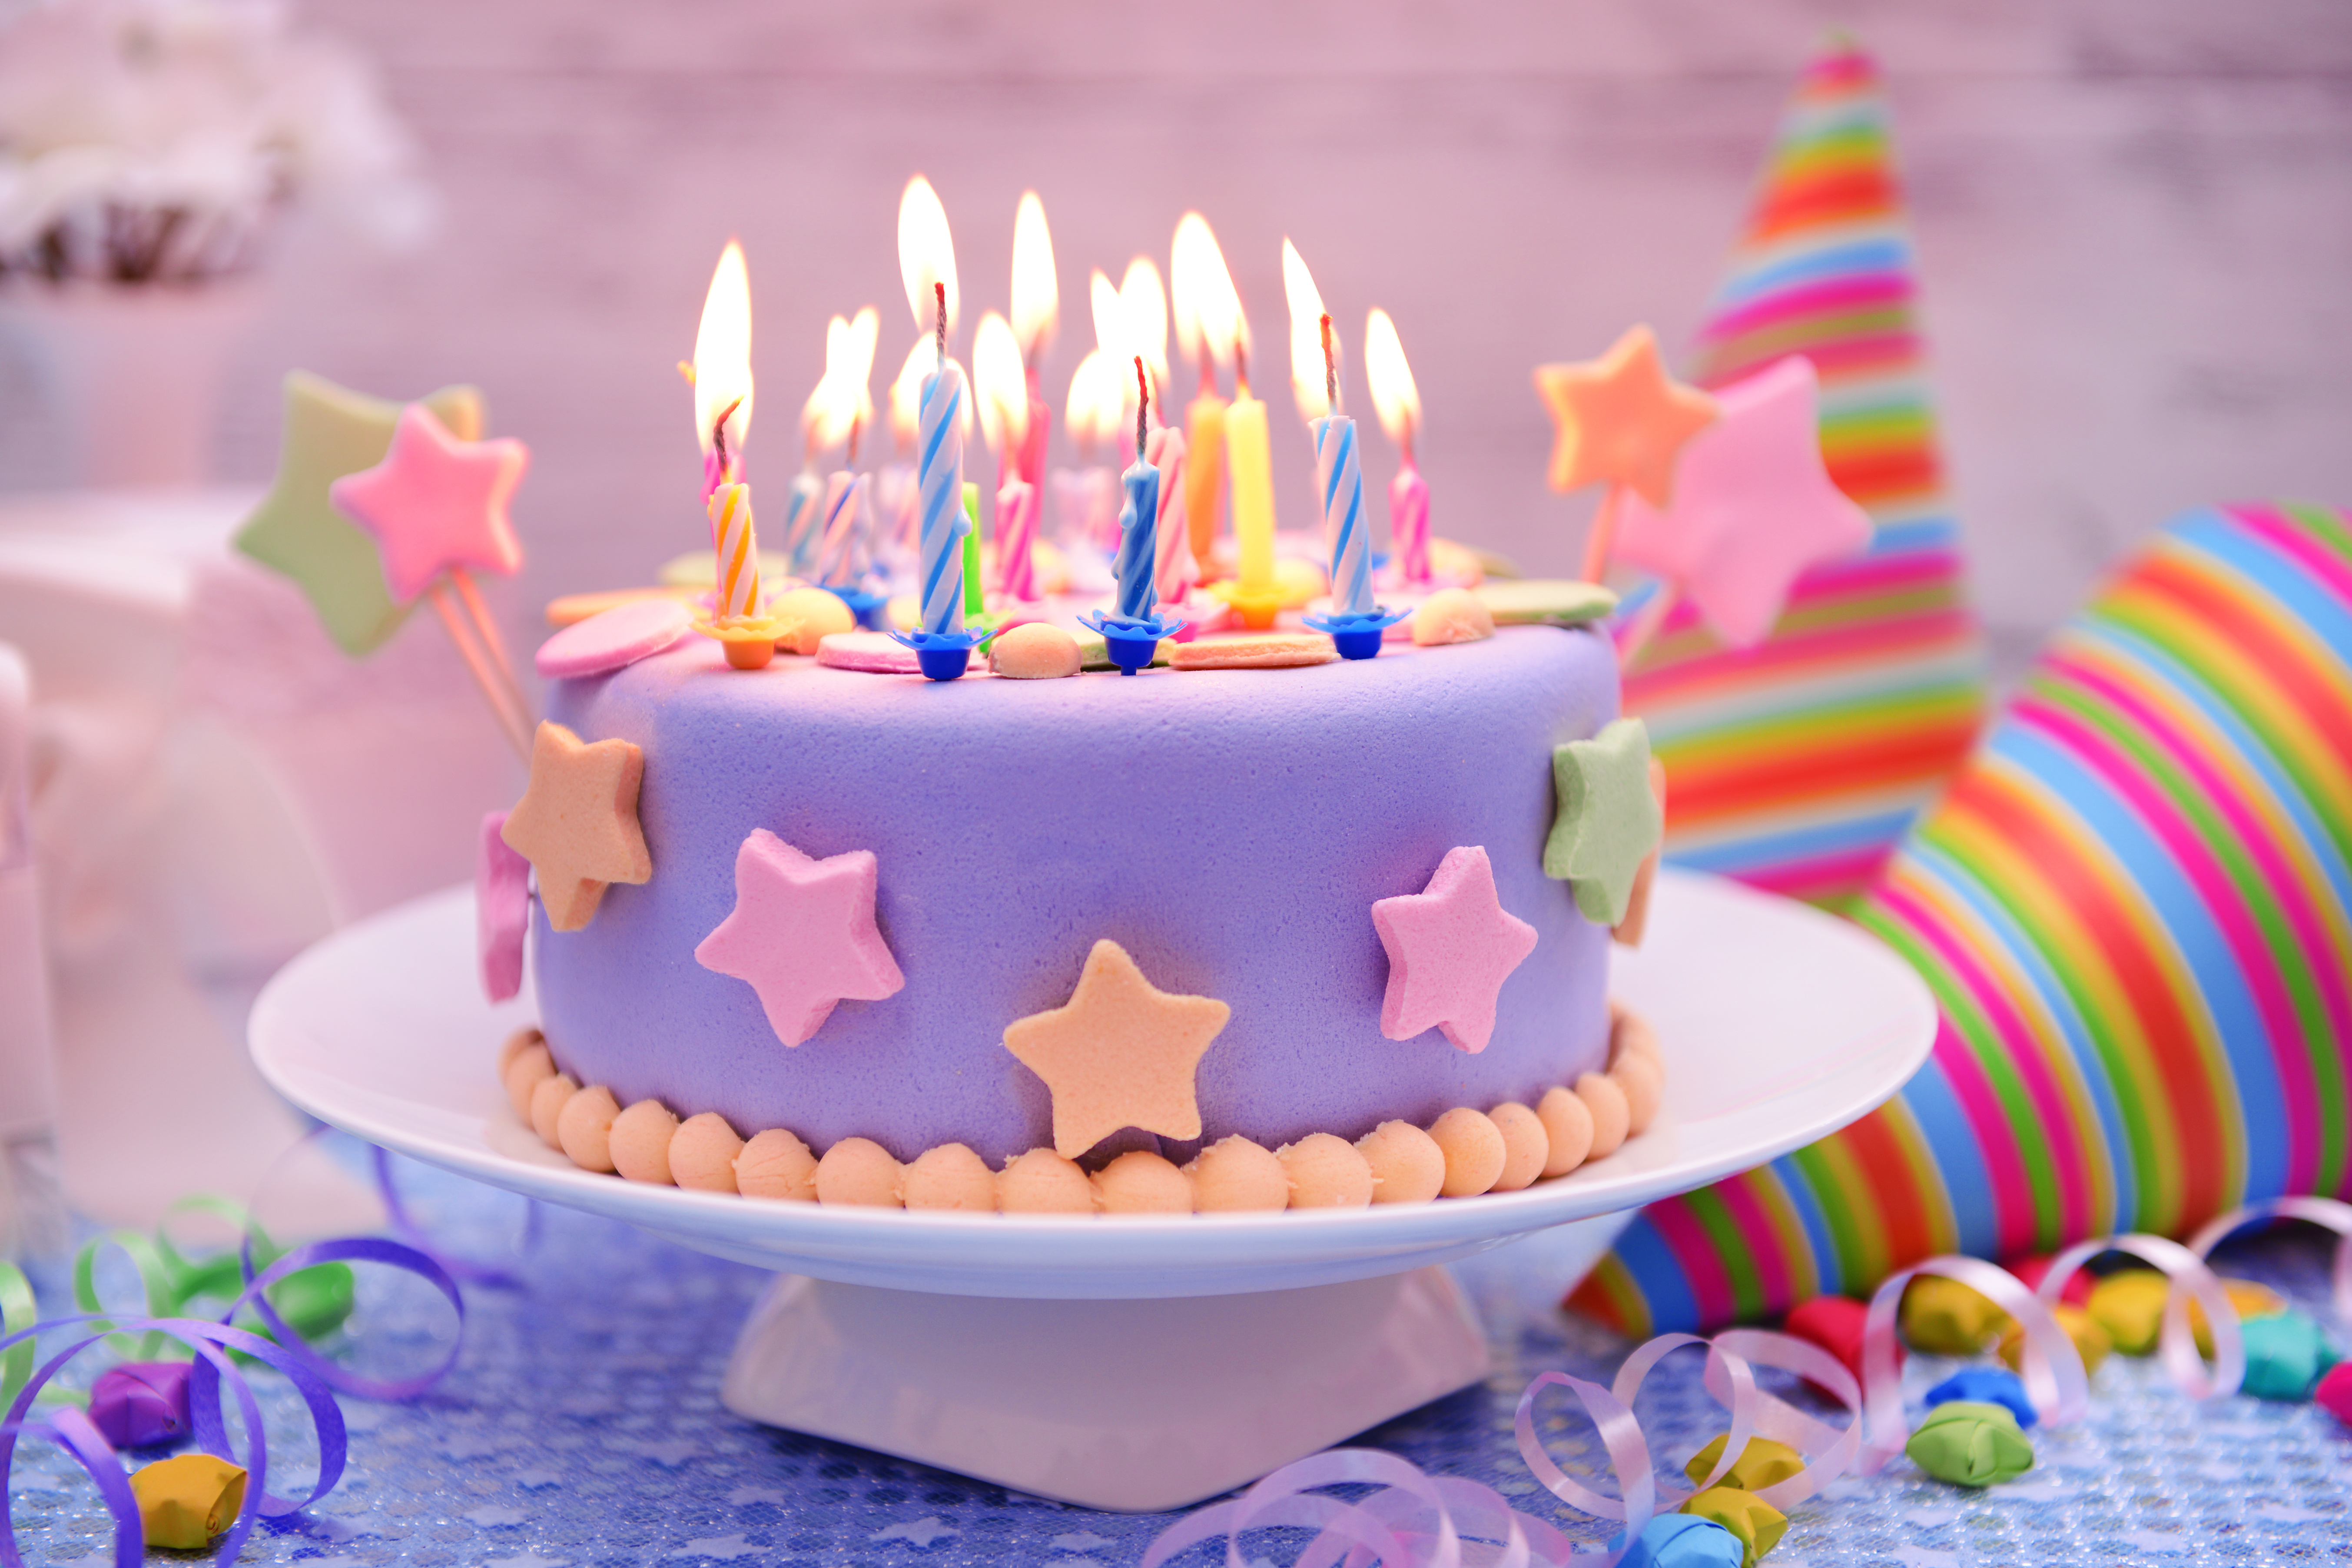 Красивая 6 на день рождения. Красивые торты на день рождения. Торт с днем рождения!. Торт со свечками. Открытка с днём рождения торт.